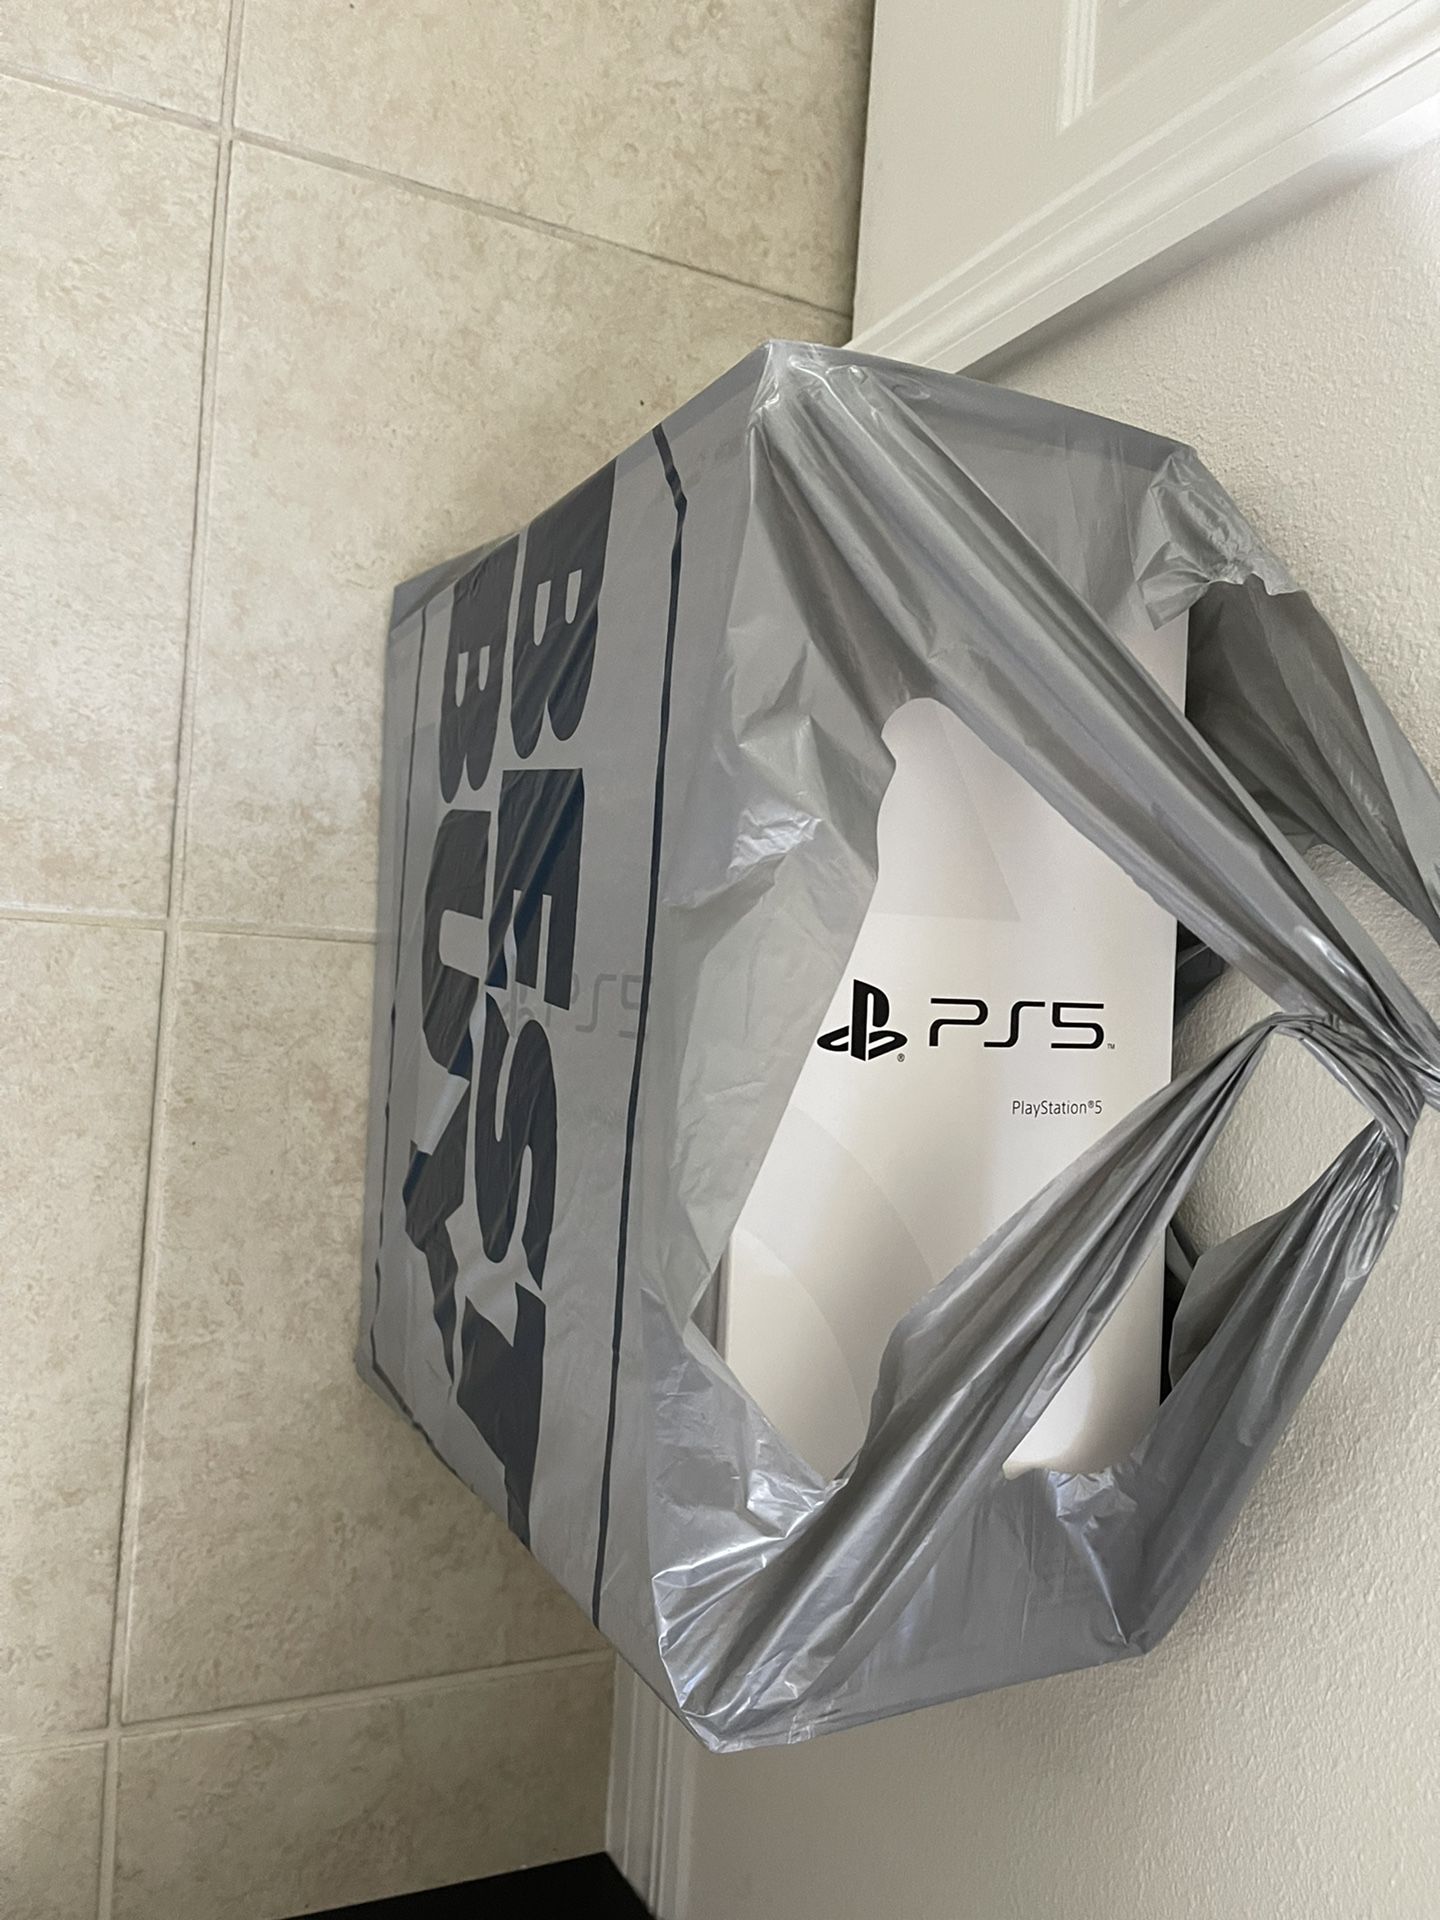 Ps5 PlayStation 5